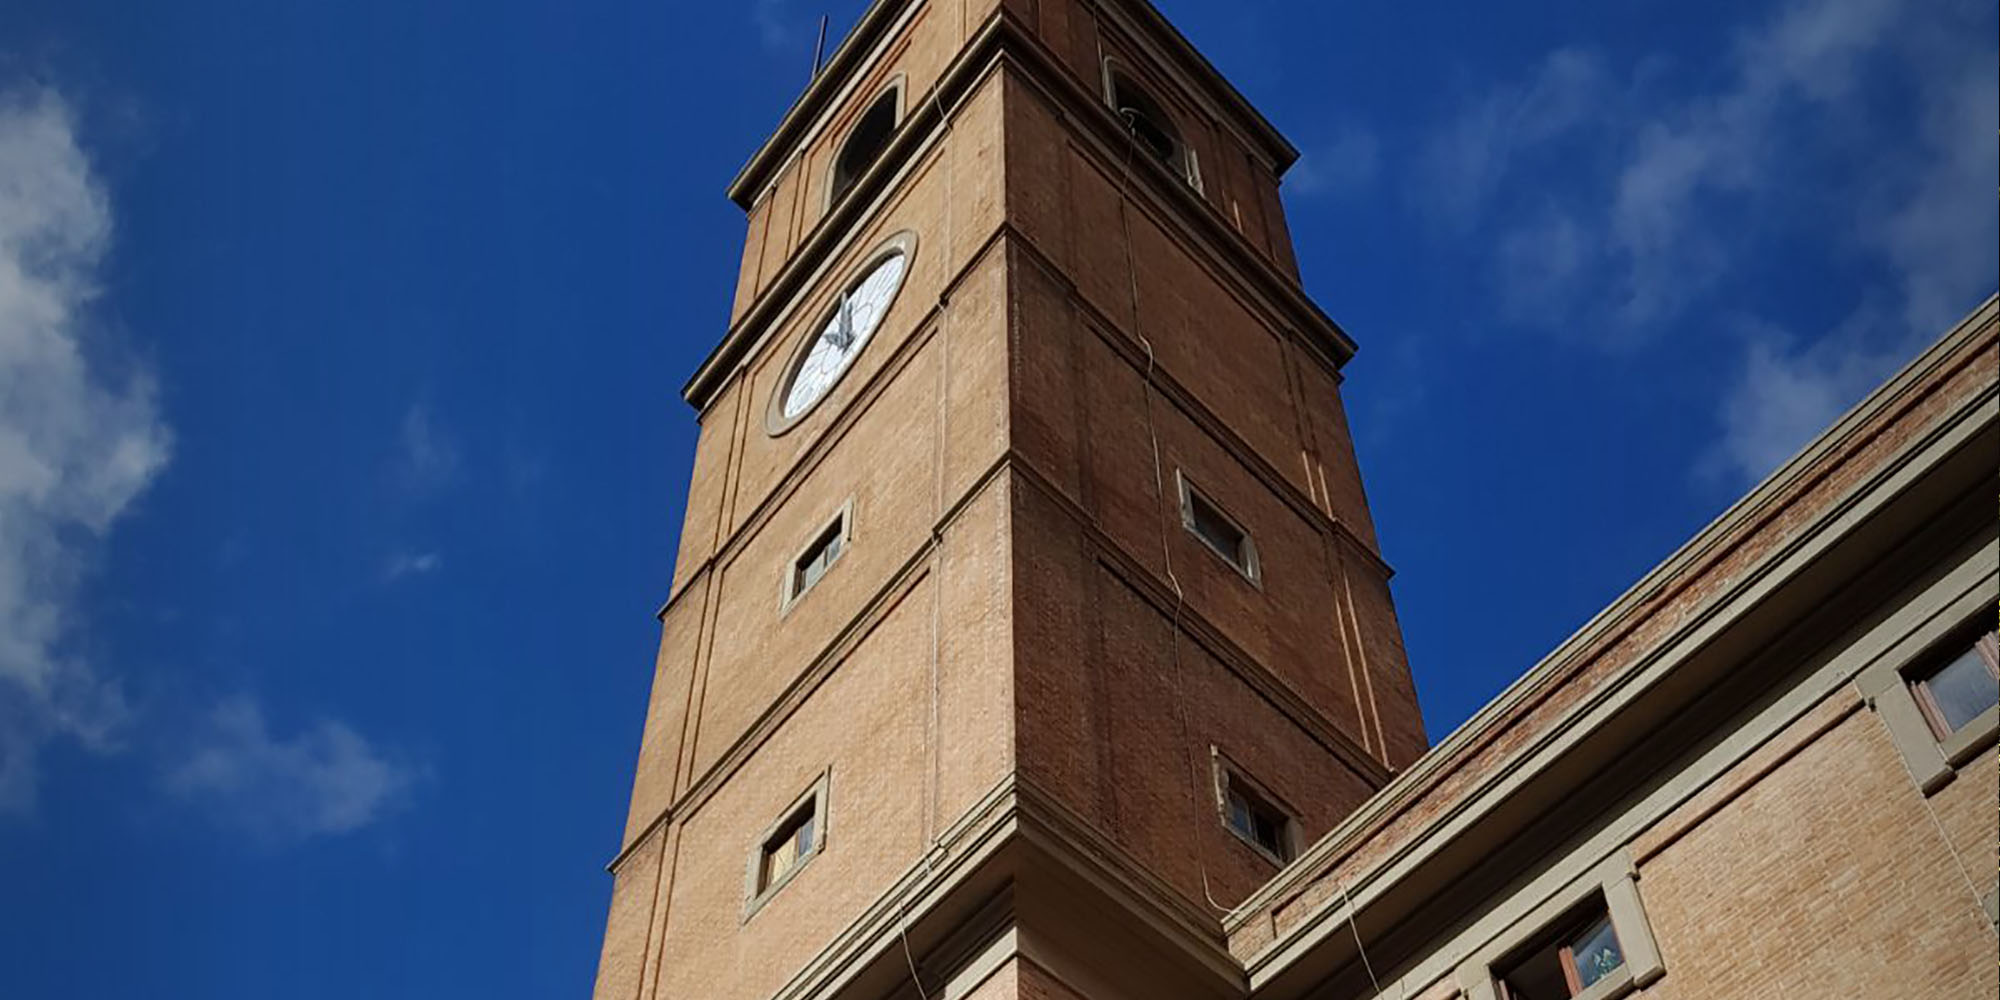 Campanile, Cattedrale di San Francesco, Livorno